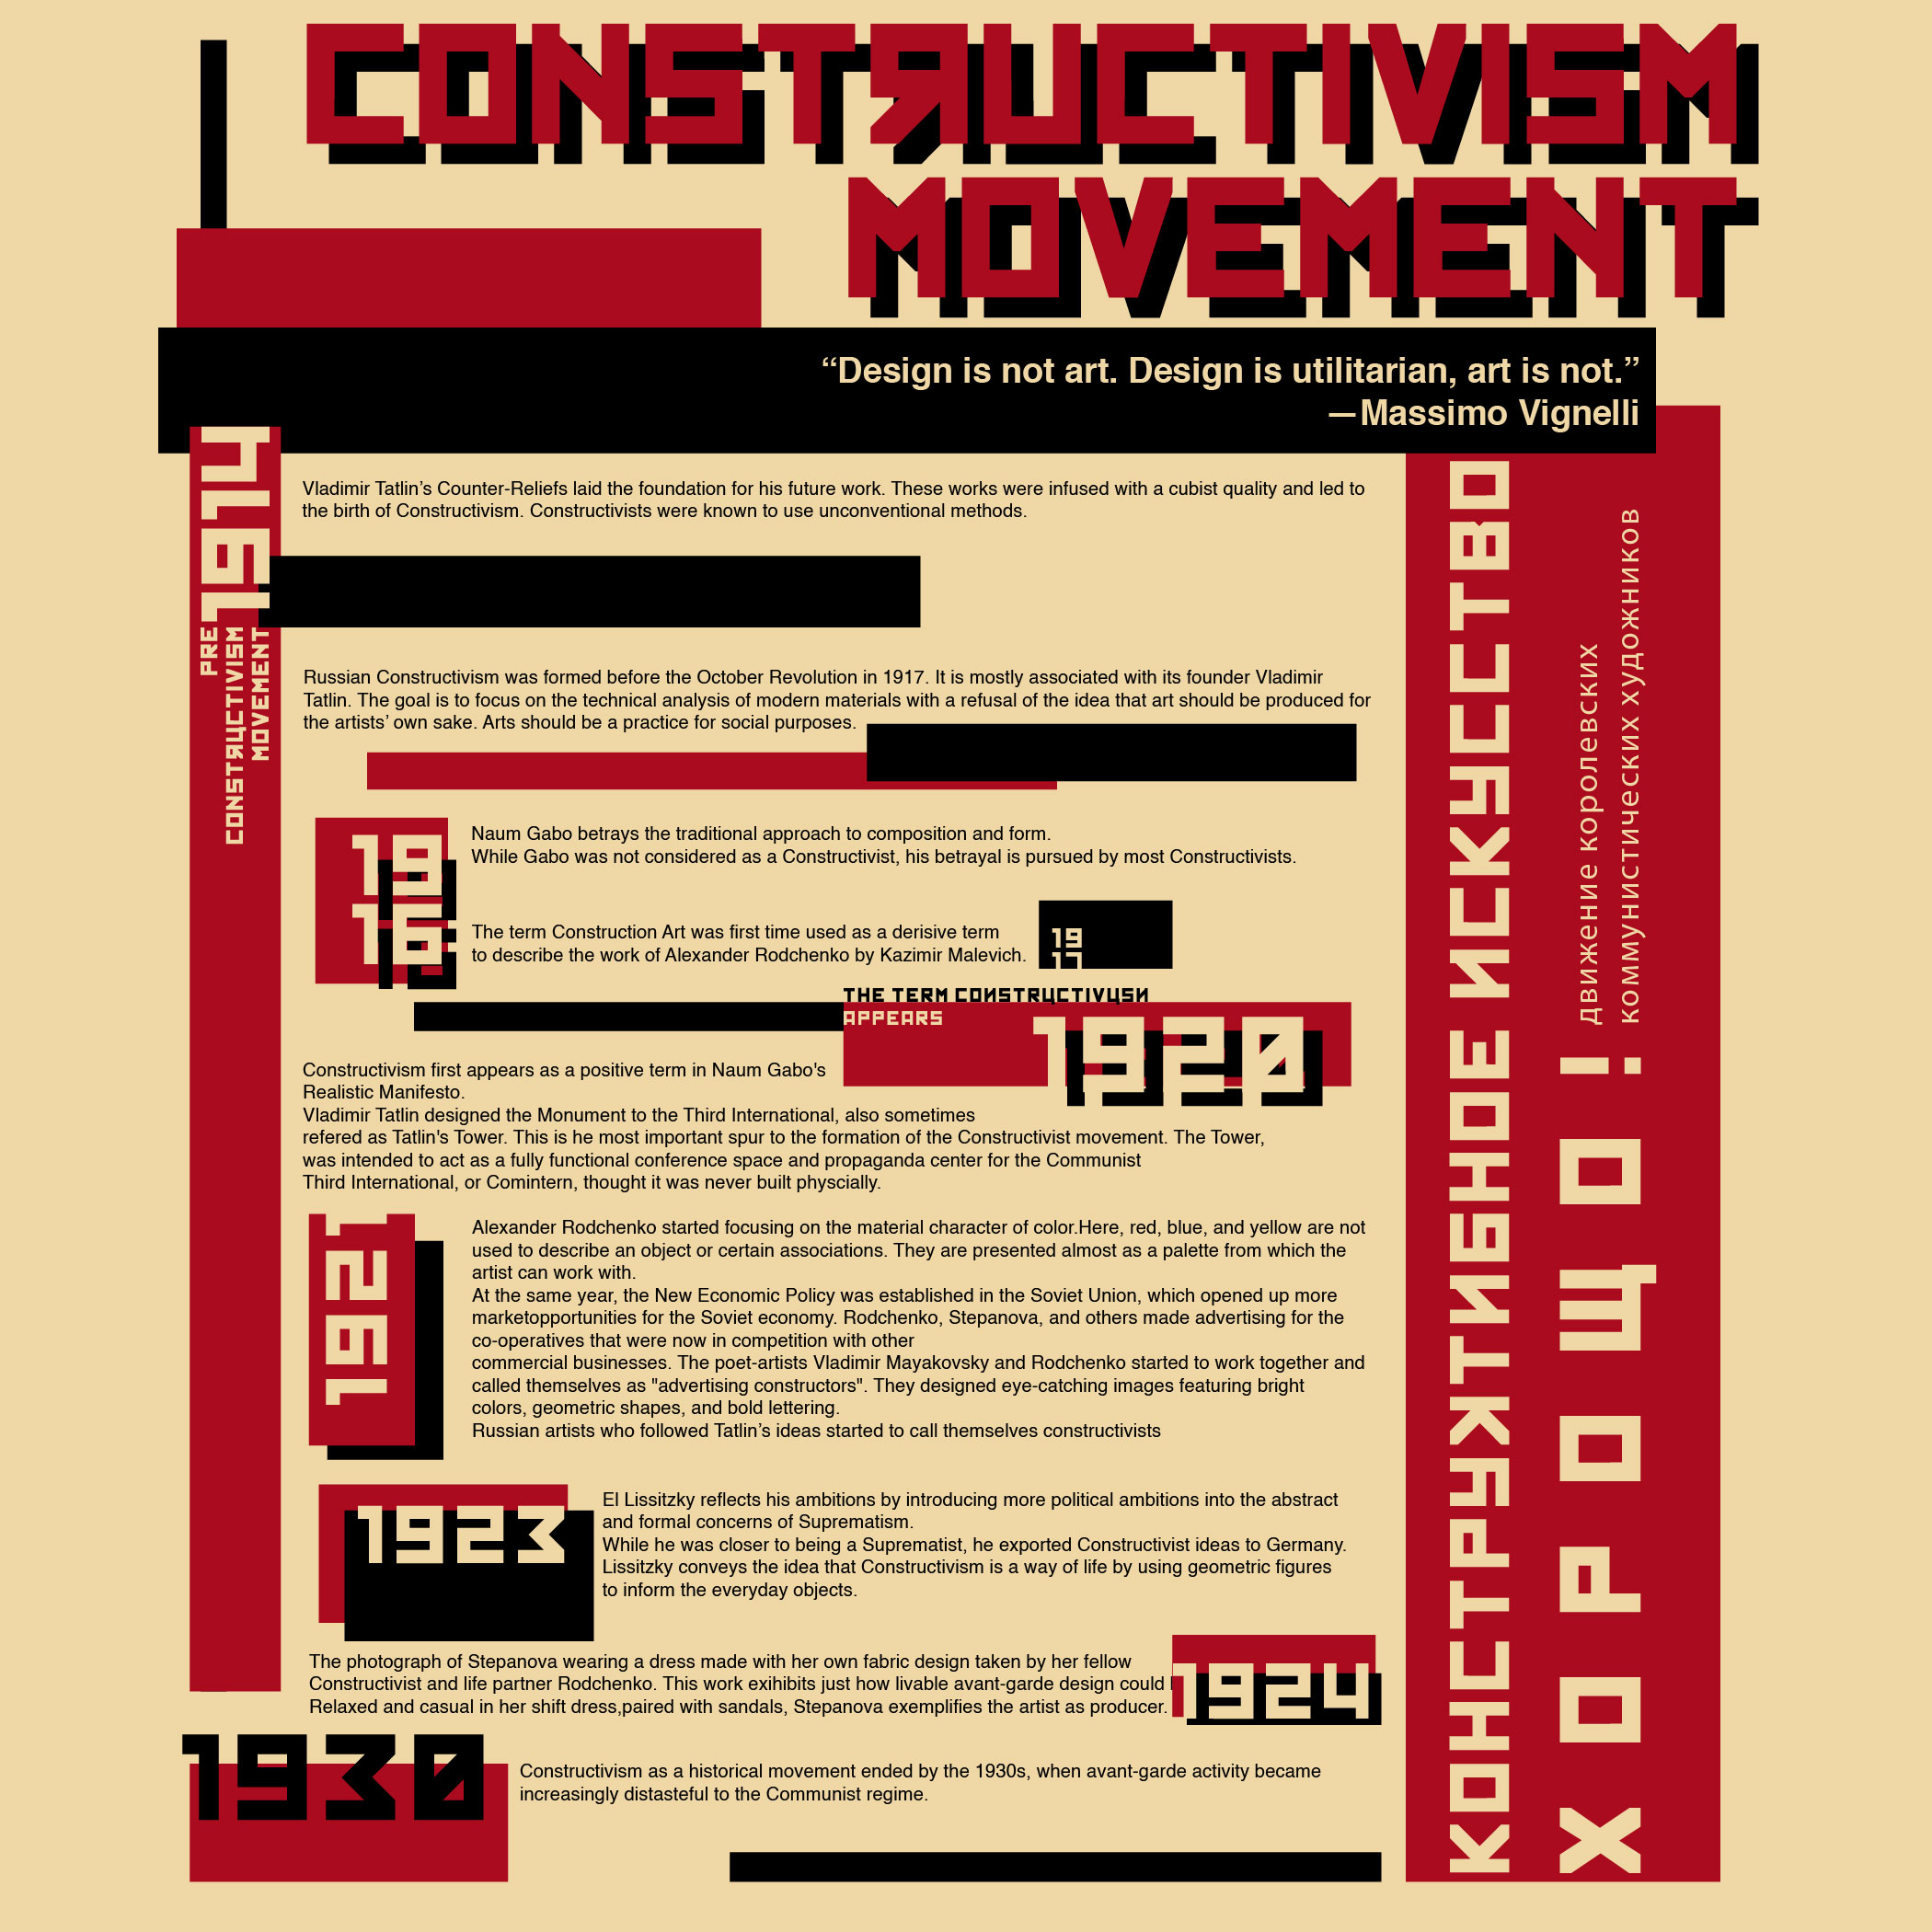 constructivism movement timeline